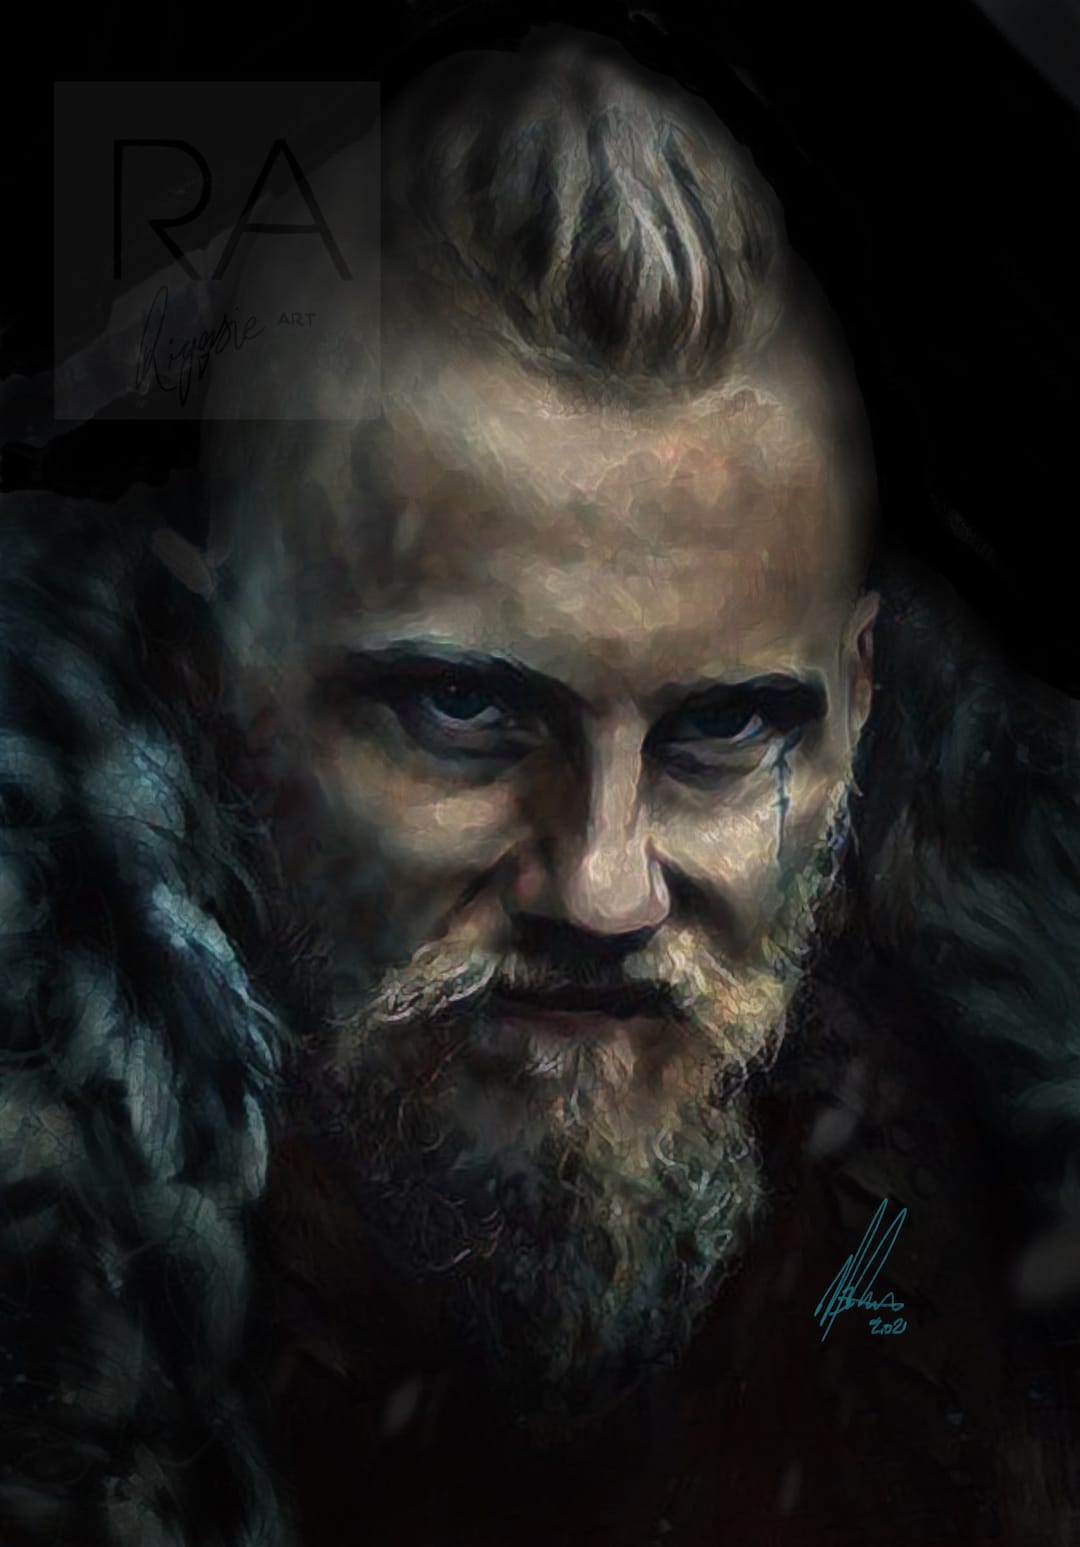 Bjorn Ironside / Ragnar Lothbrok / Vikings / Norway / Hand 